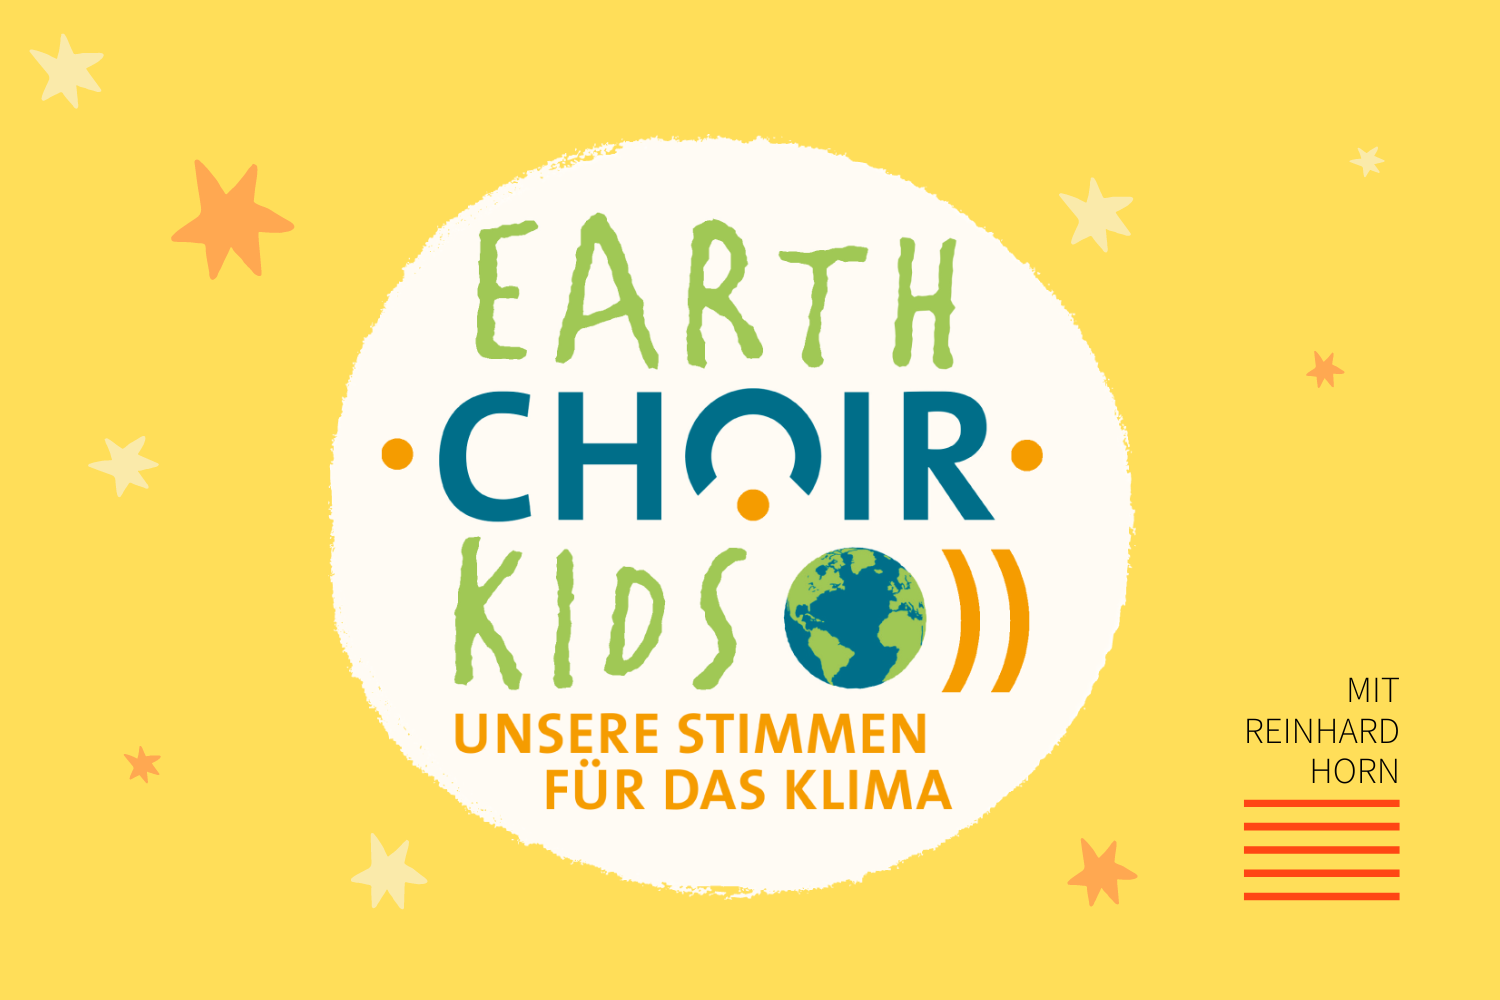 Singen fürs Klima – Ein Interview mit dem Kinderliedermacher Reinhard Horn zu seinem aktuellen Klimaprojekt Earth Choir Kids